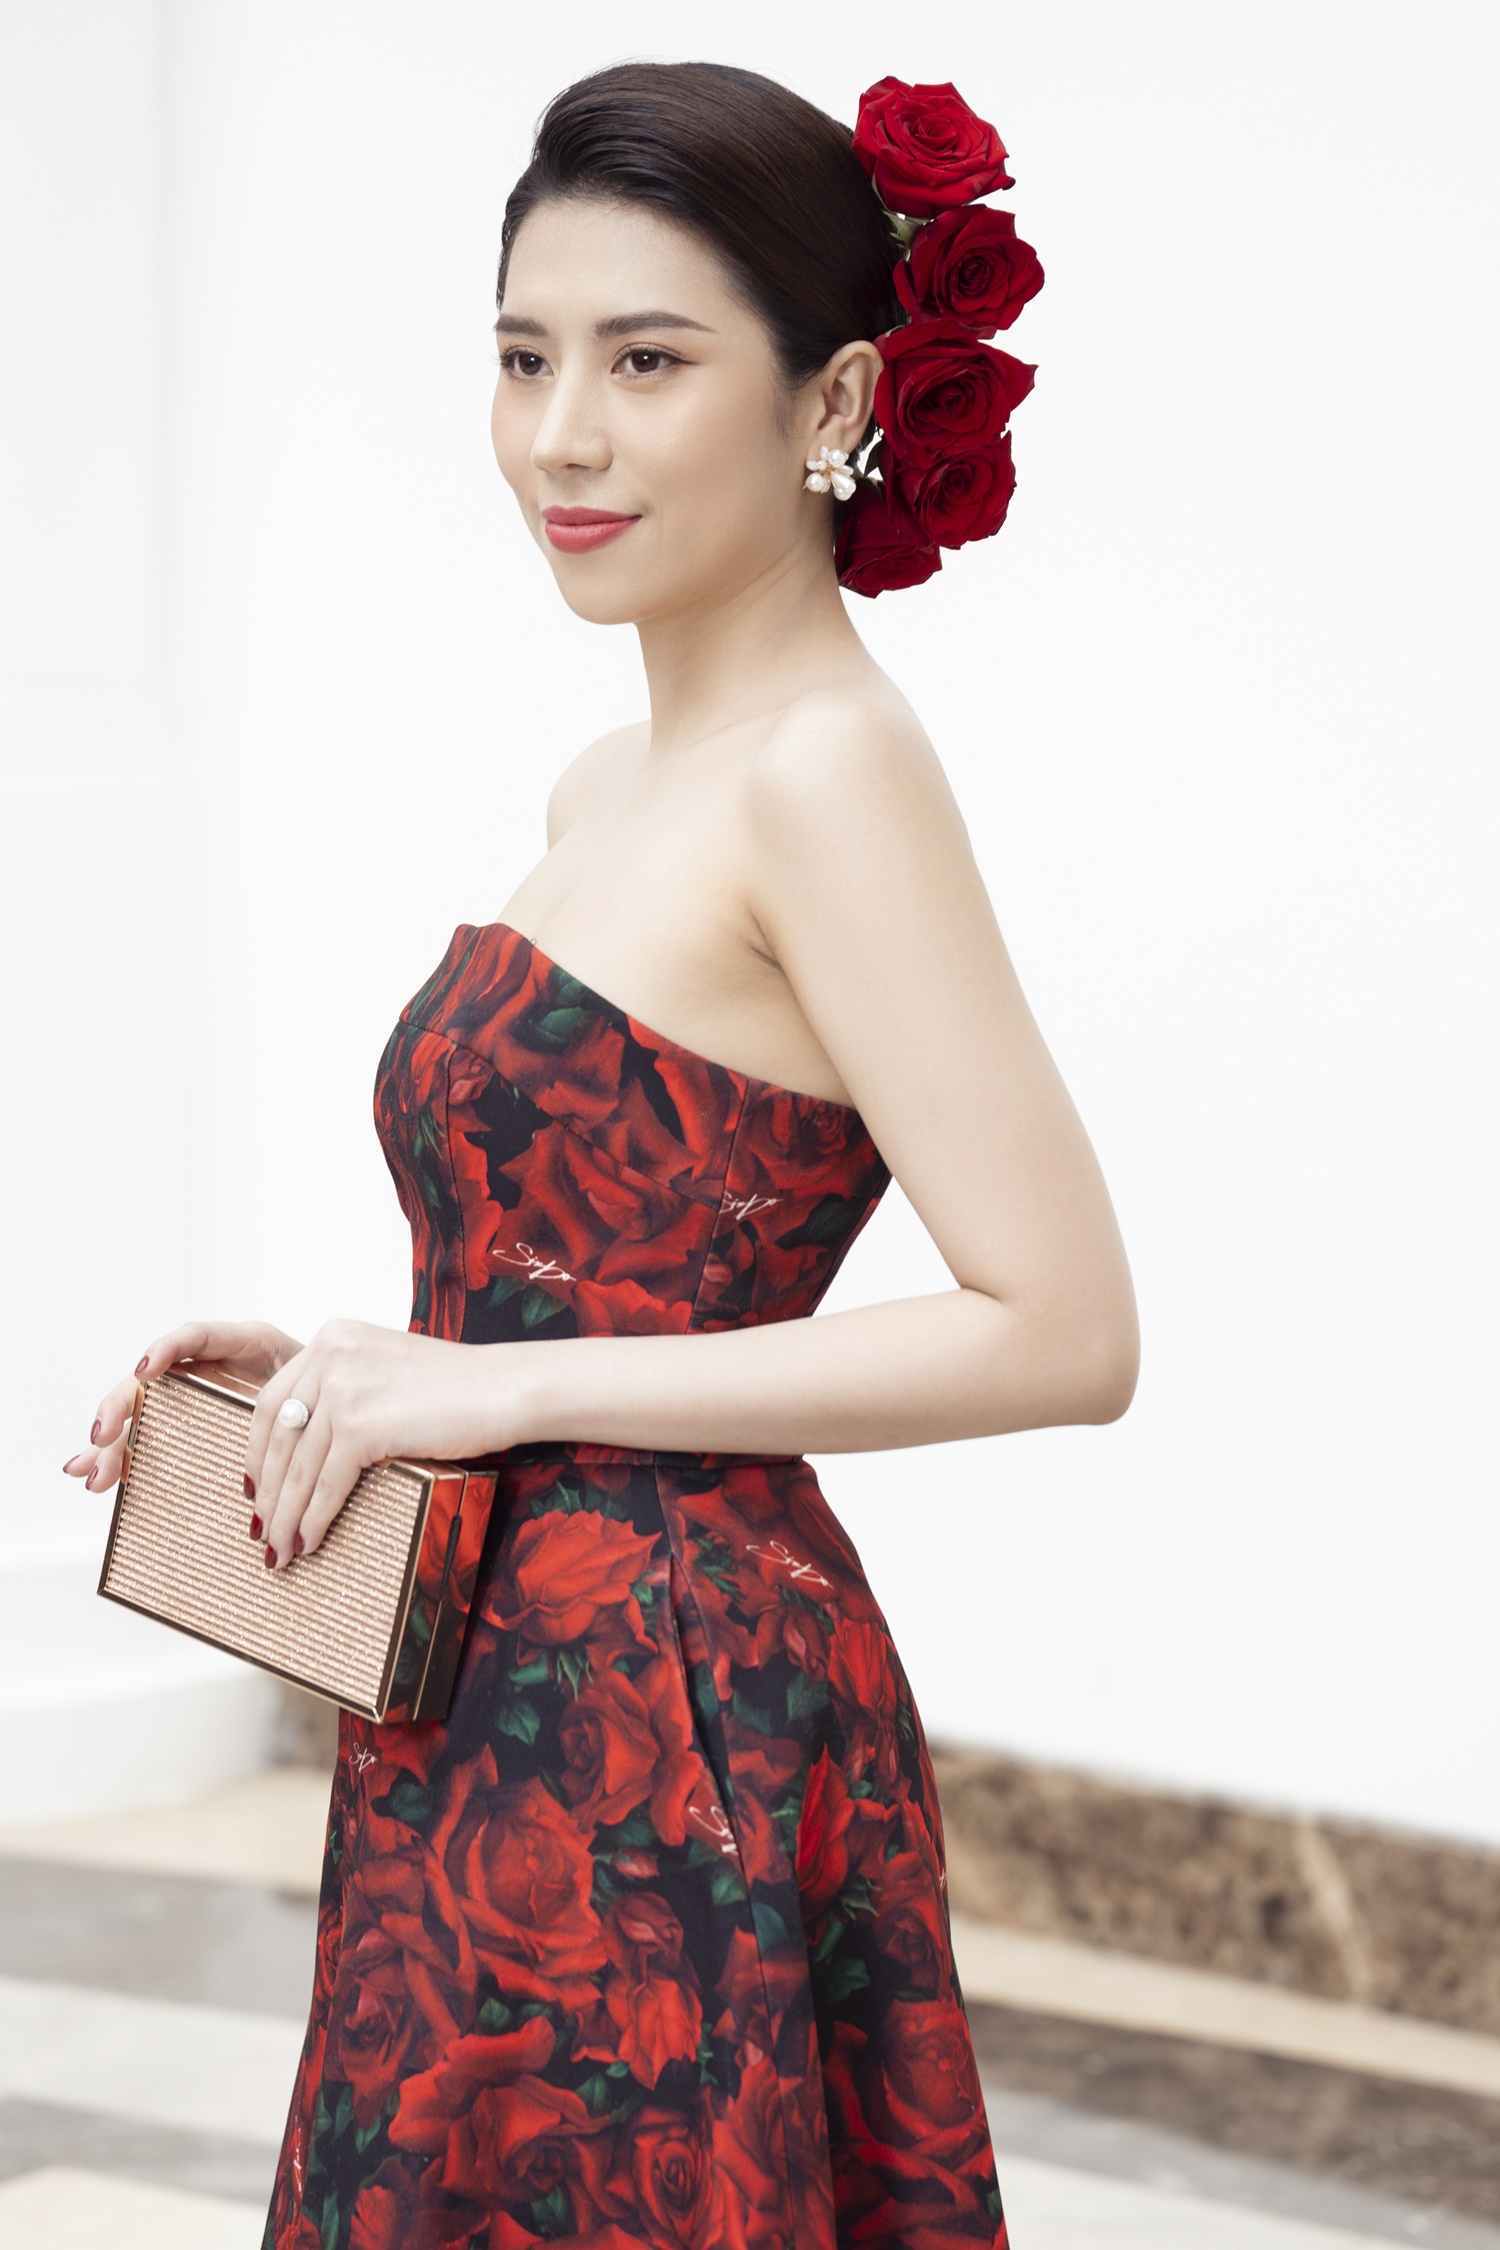 Hoa hậu Dương Yến Nhung cho rằng các cuộc thi cần truyền tải thông điệp, hoạt động ý nghĩa. Ảnh: Ban tổ chức.